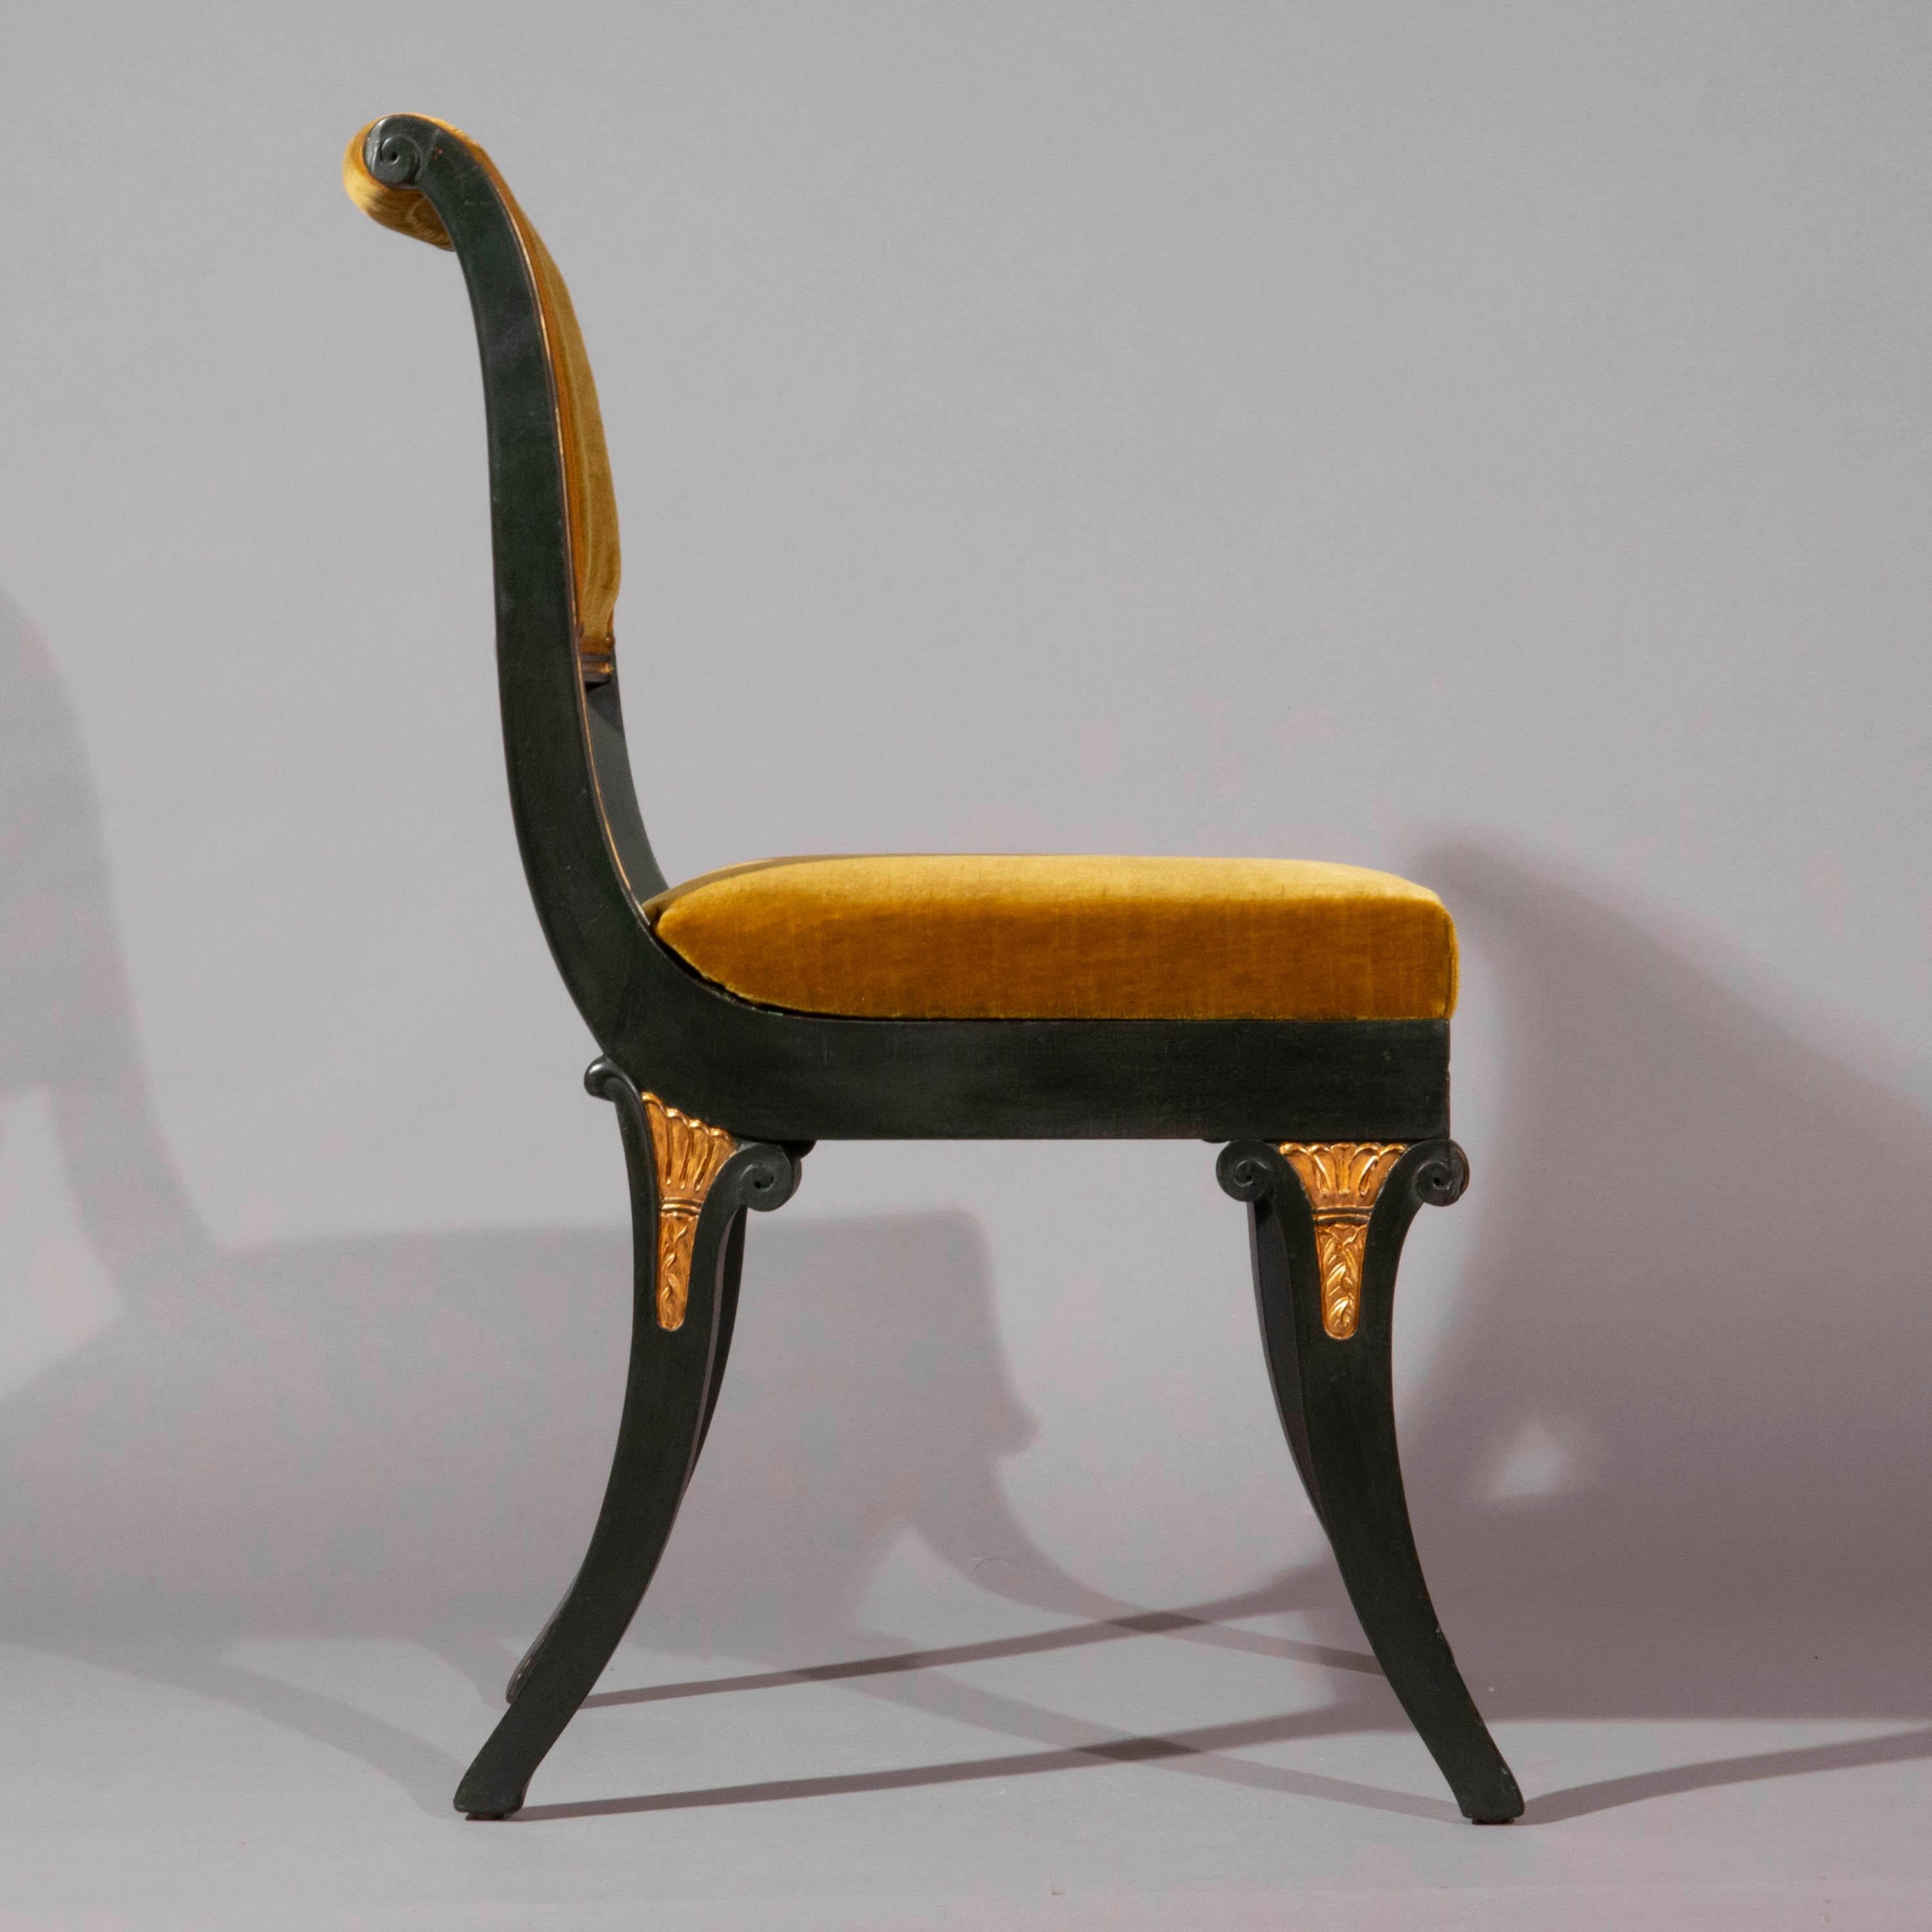 Paire de chaises d'appoint en bronze peint et doré de forme Klismos
Origine britannique, vers 1825.

Pourquoi nous les aimons
Un design Klismos intemporel, magnifiquement peint pour imiter le bronze patiné avec des ornements dorés, recouvert